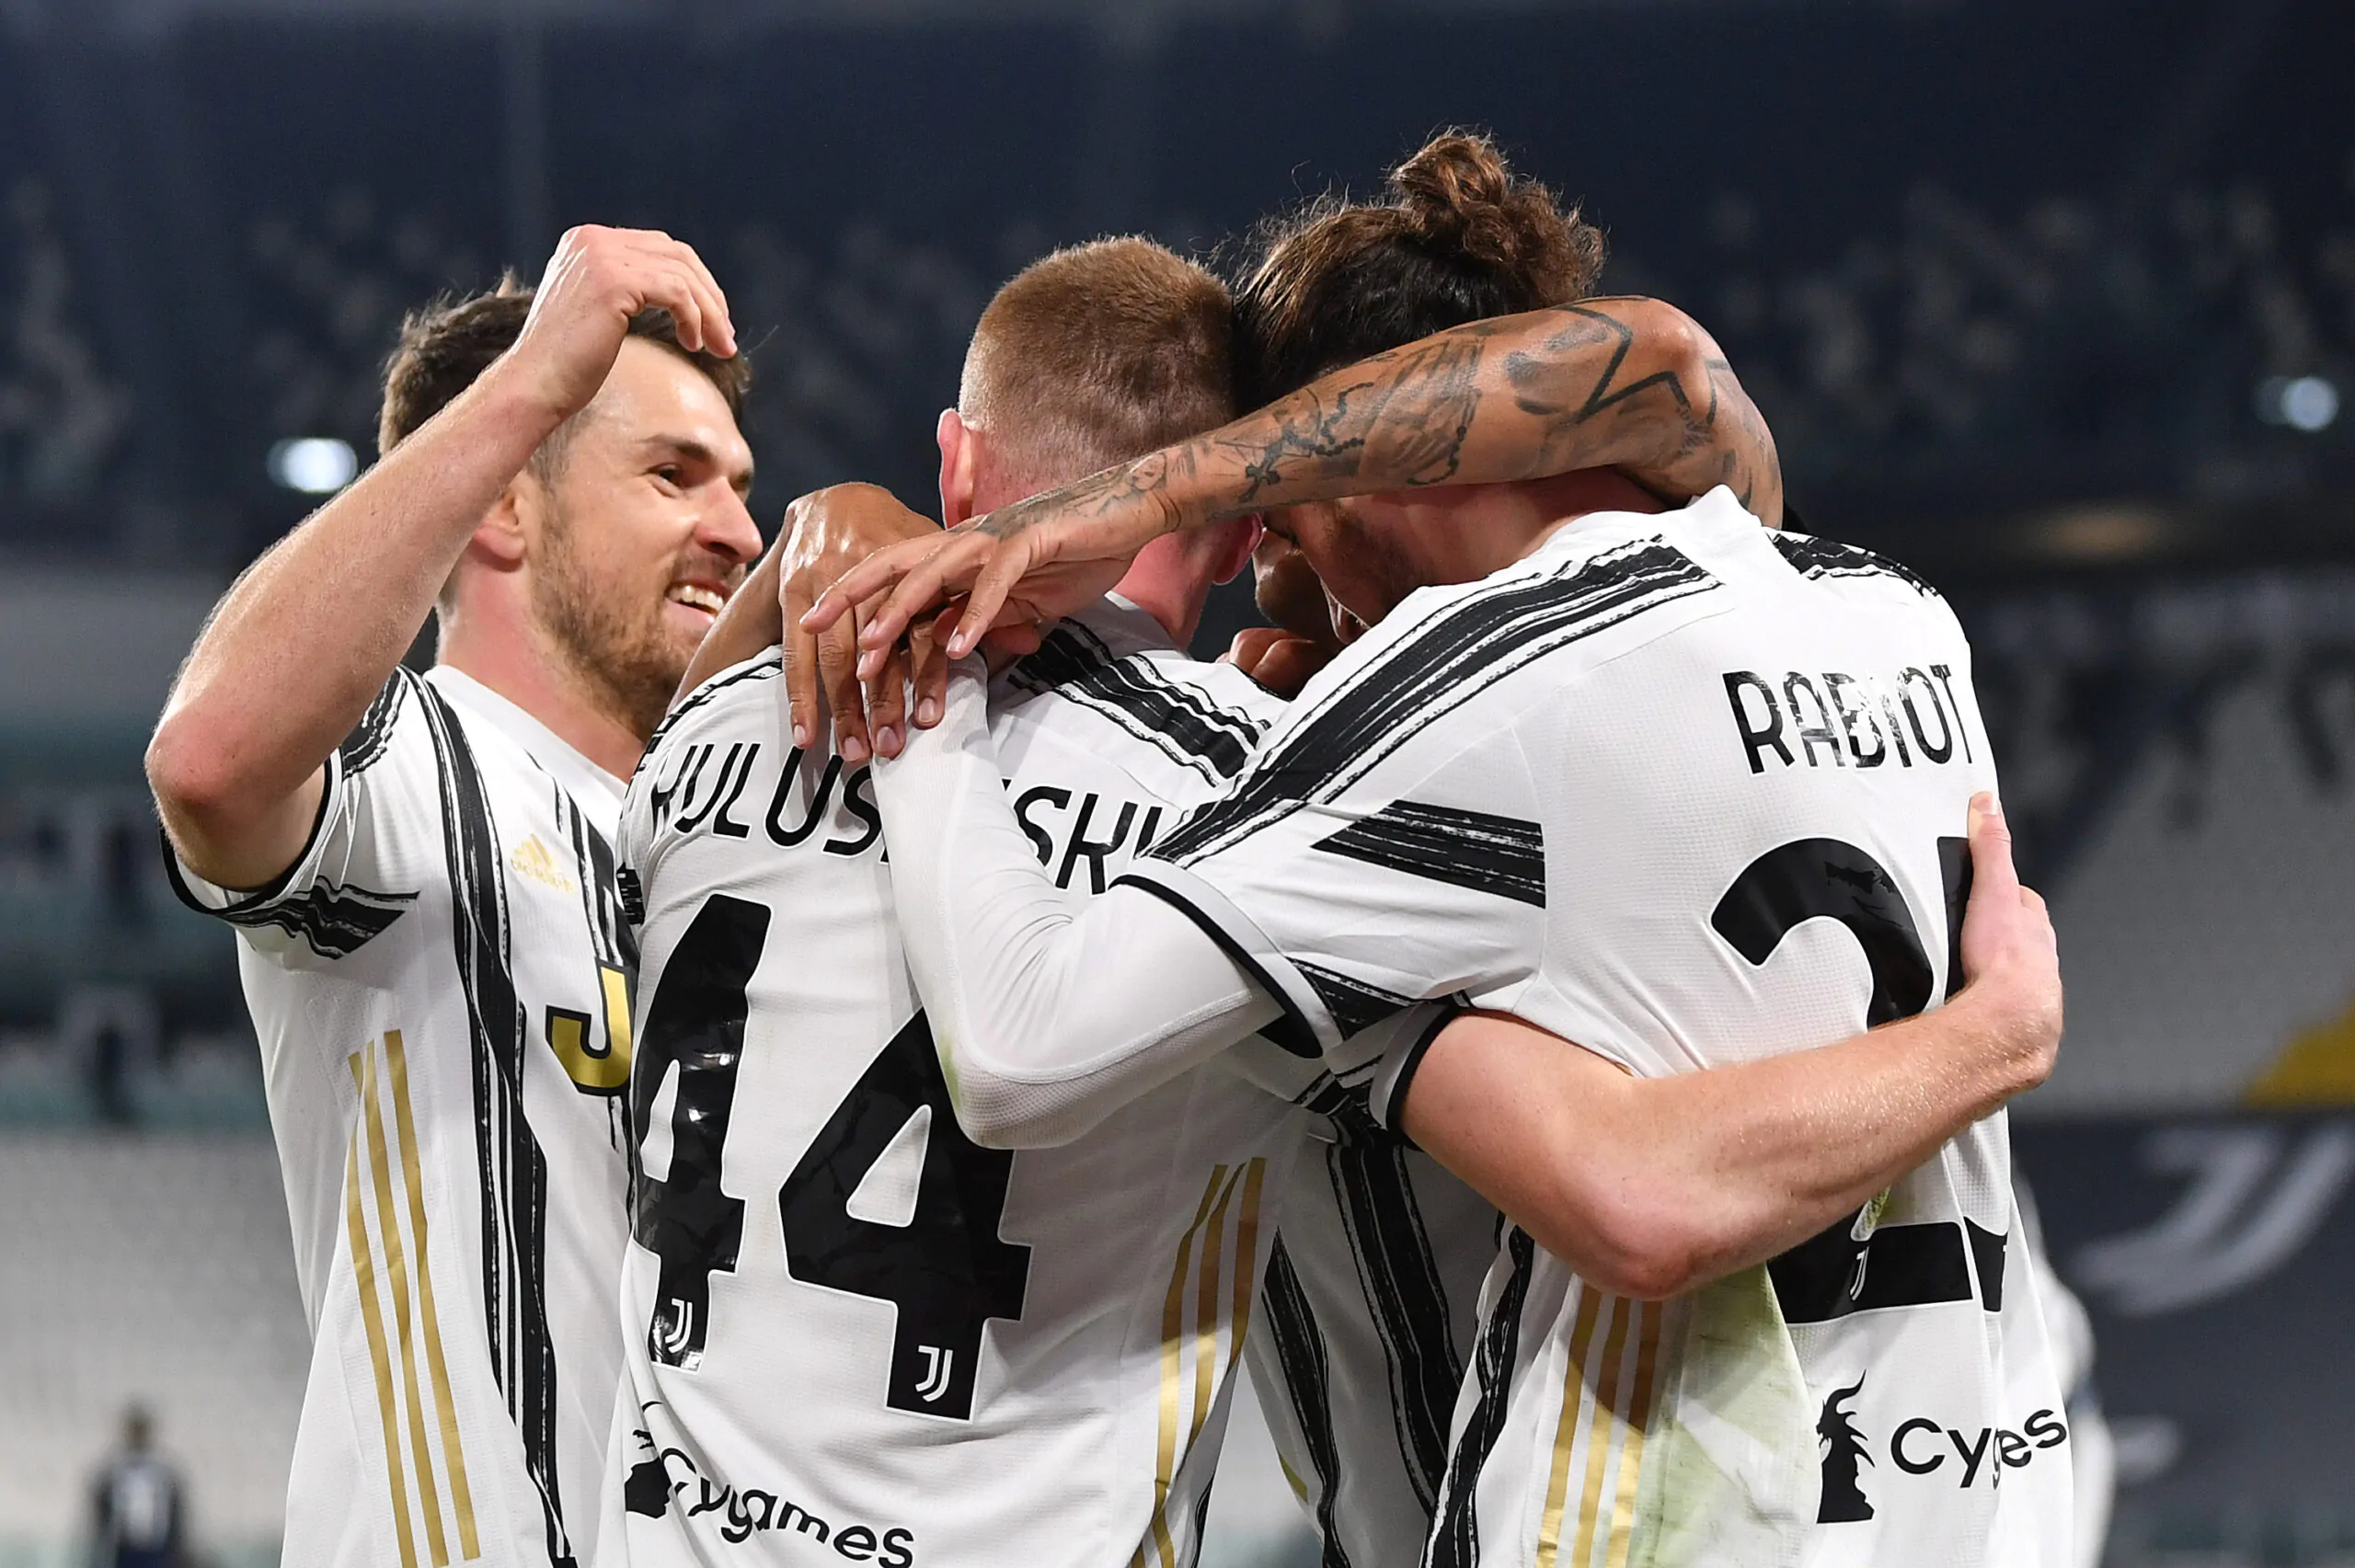 Calciomercato della Juventus: possibili rinforzi in arrivo in attacco e centrocampo